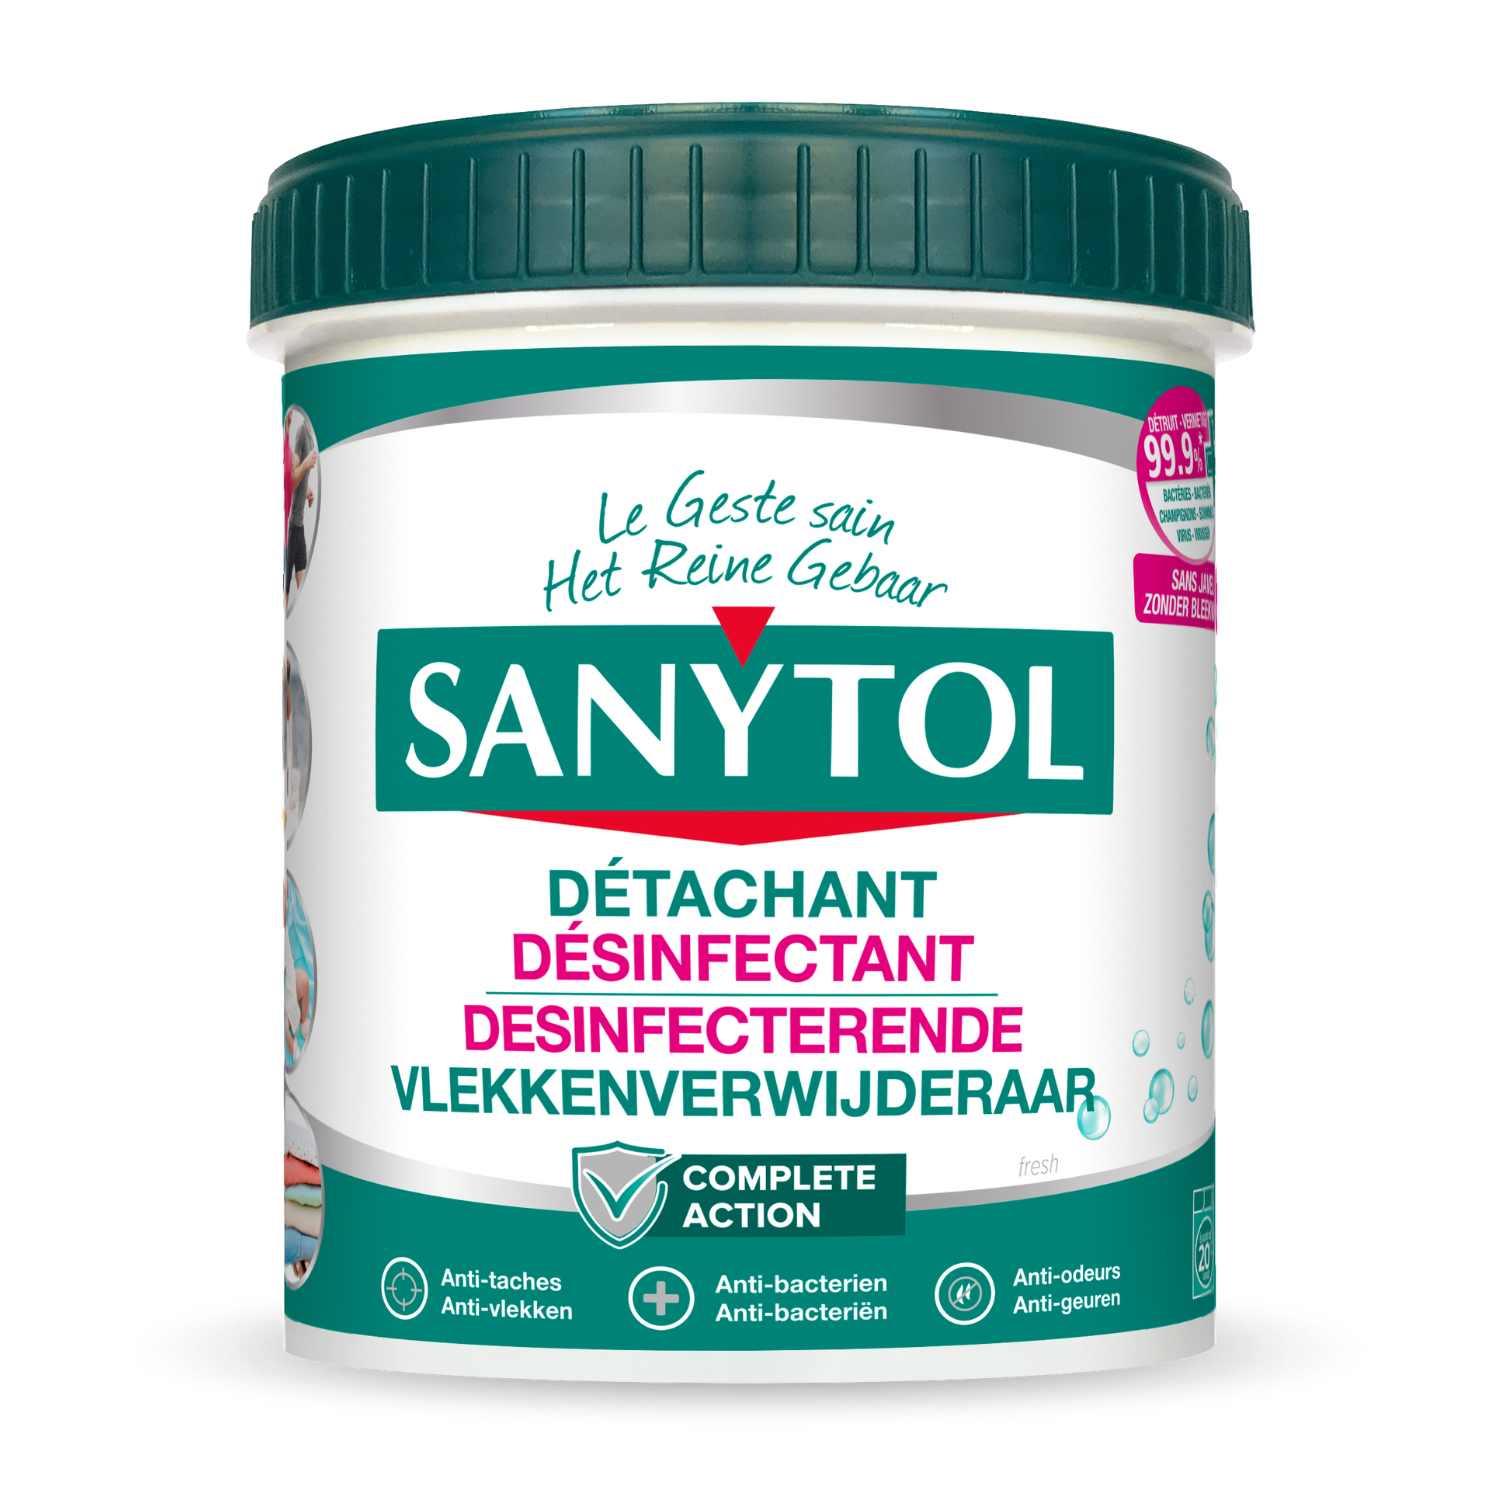 Sanytol, Désinfectant linge, 1 l